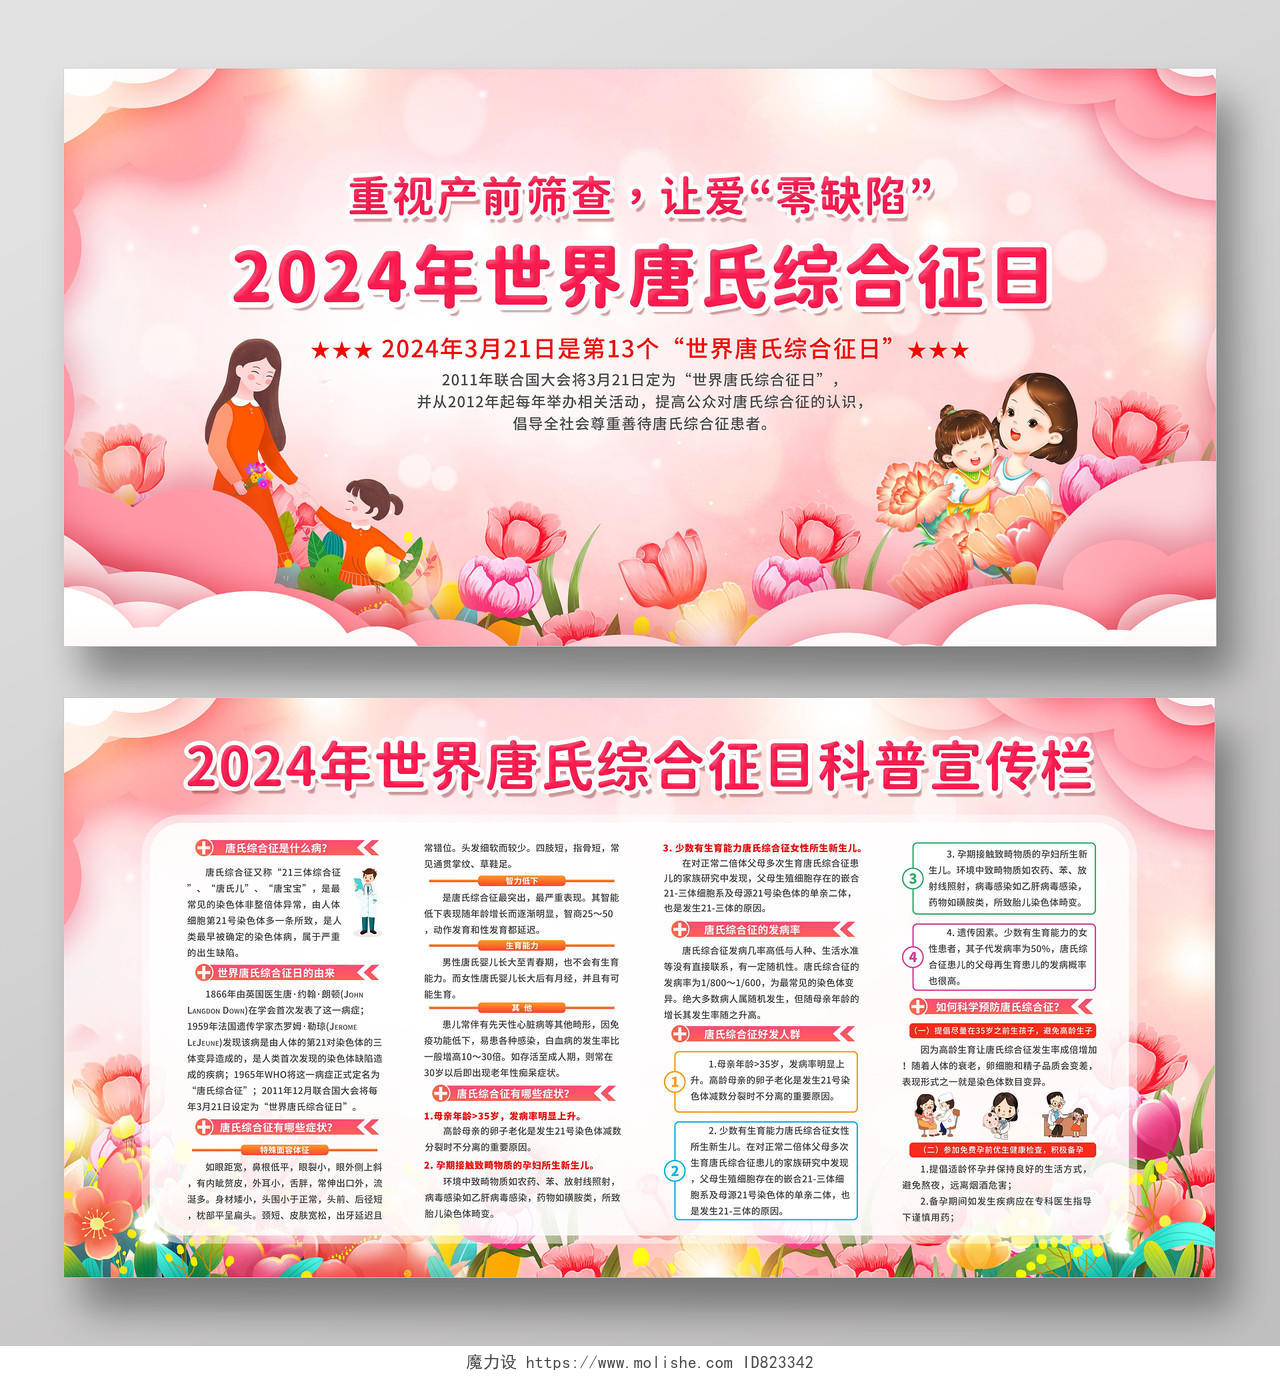 粉色温馨插画风2024年世界唐氏综合征科普宣传栏展板世界唐氏综合征日